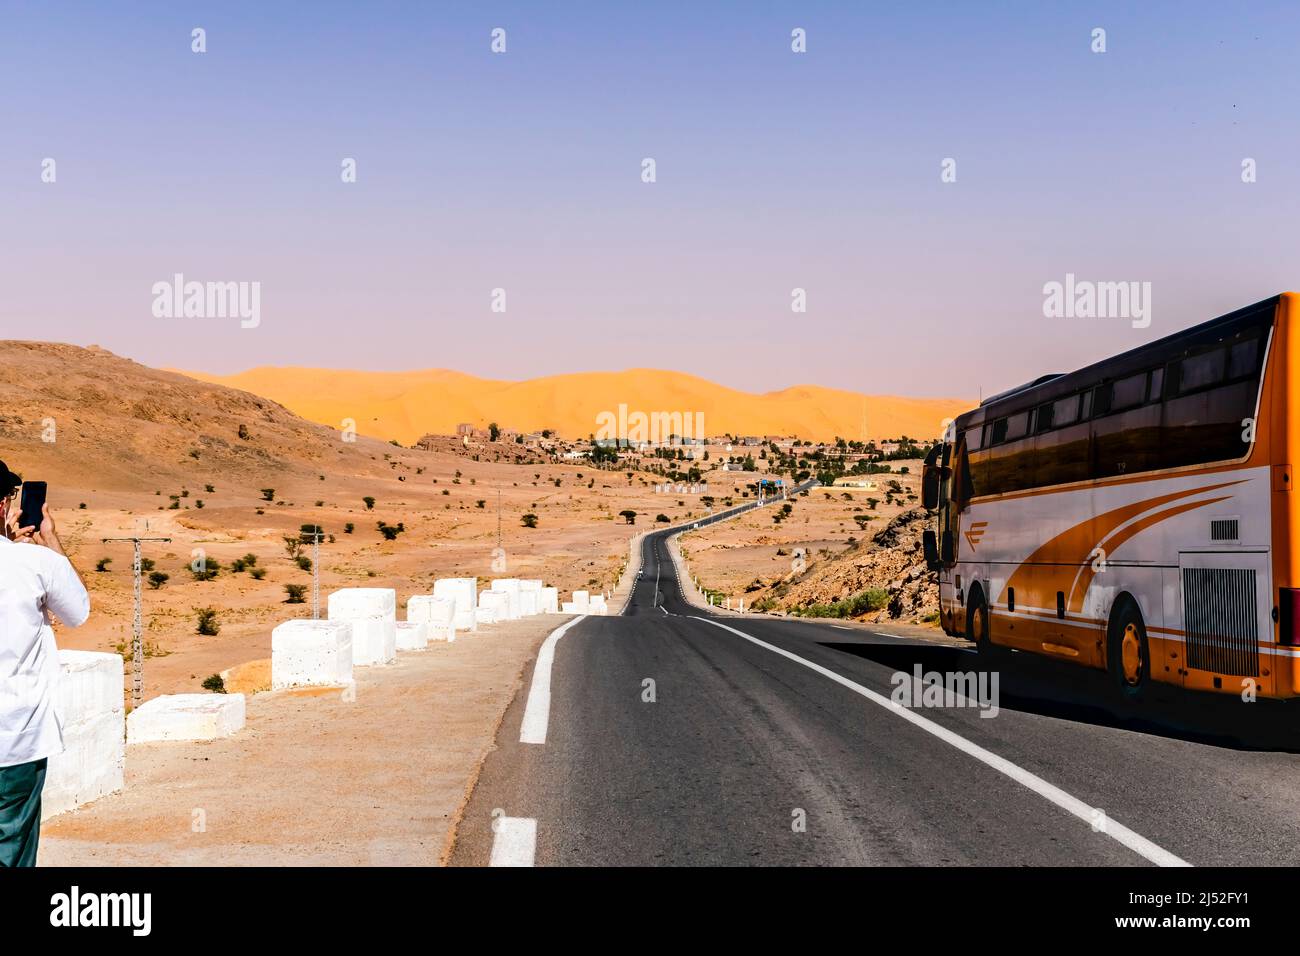 Un bus garé et un touriste méconnaissable prenant une photo avec un smartphone de la dune de sable et de la montagne reg, des clous en béton blanc le long de la route. Banque D'Images